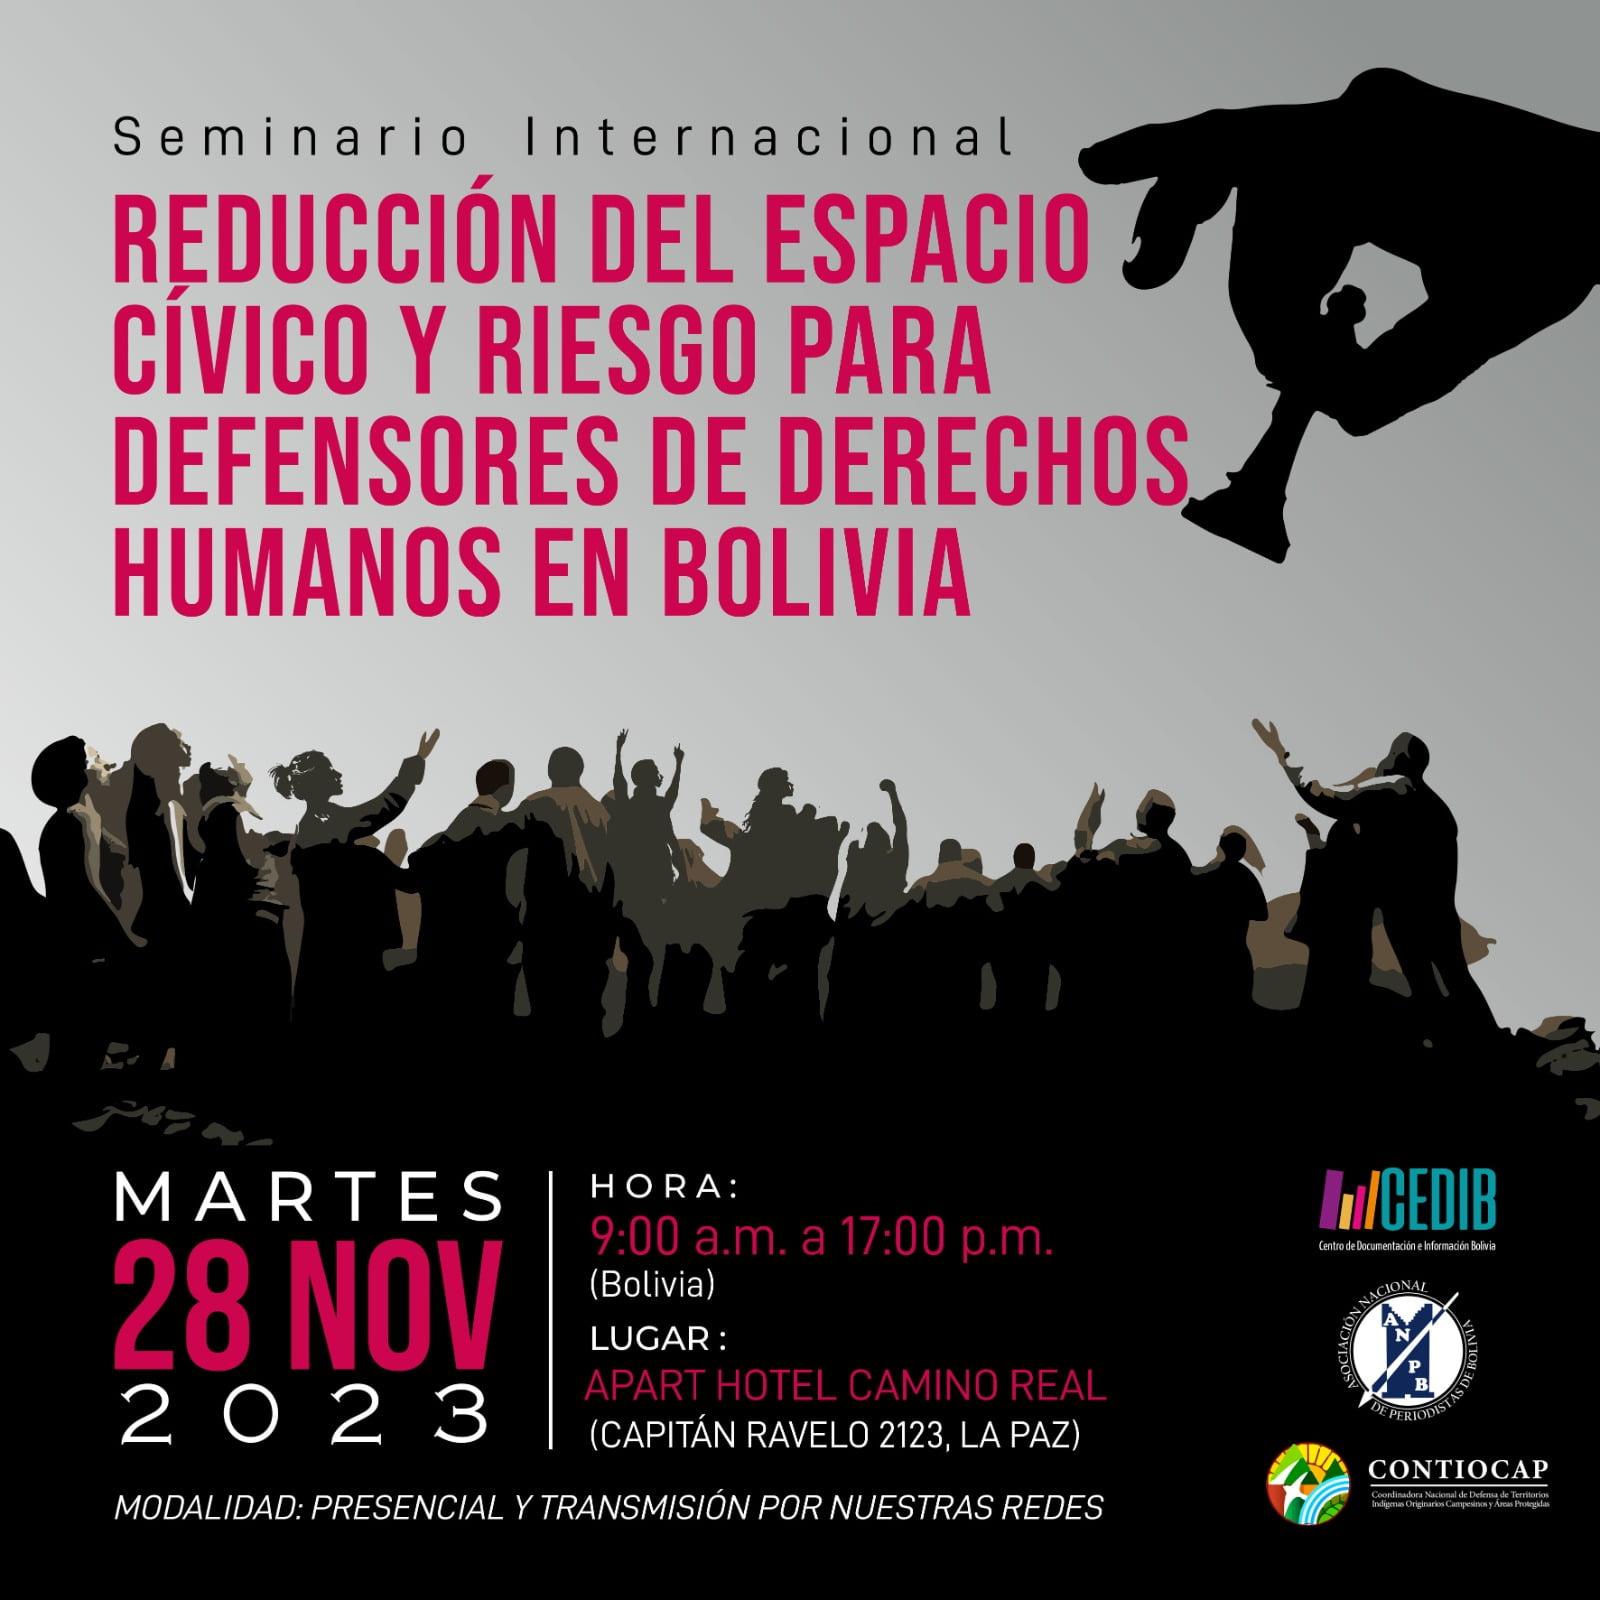 Nota de prensa: Seminario internacional Reducción del Espacio cívico y riesgos defensores en Bolivia